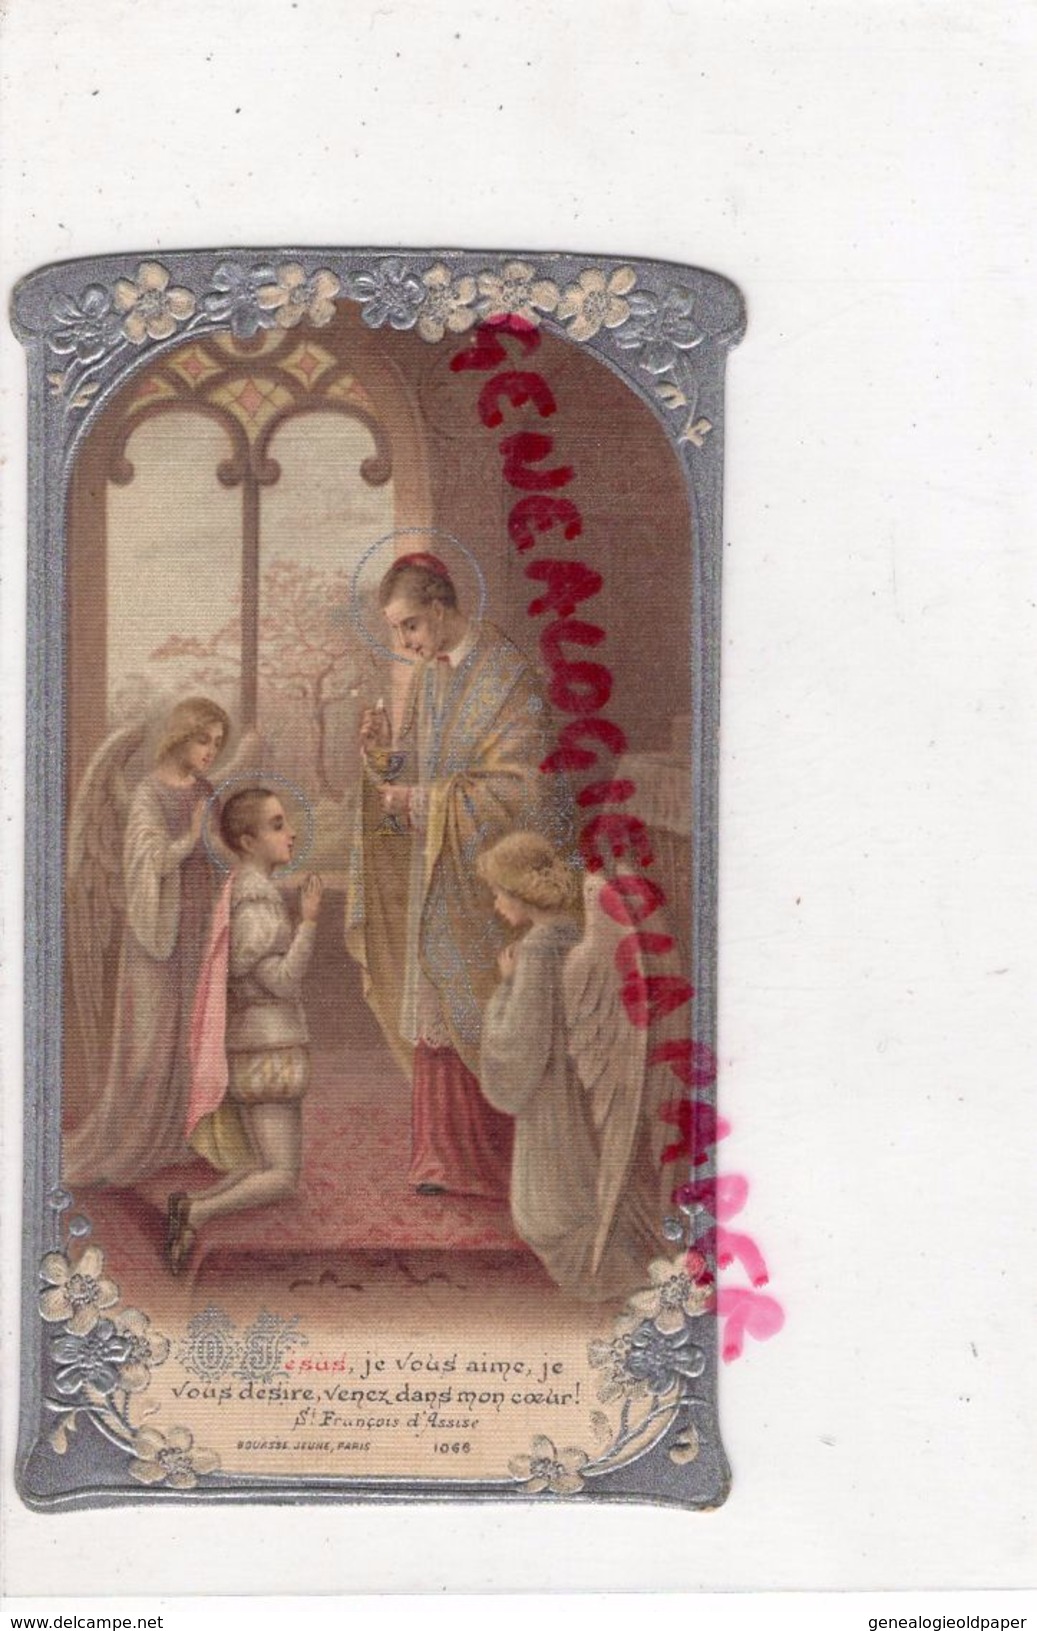 87 -LIMOGES- EGLISE ST SAINT MICHEL DES LIONS -SOUVENIR 1ERE COMMUNION MARCEL PARISET  -1908- JESUS ST FRANCOIS ASSISE - Devotion Images